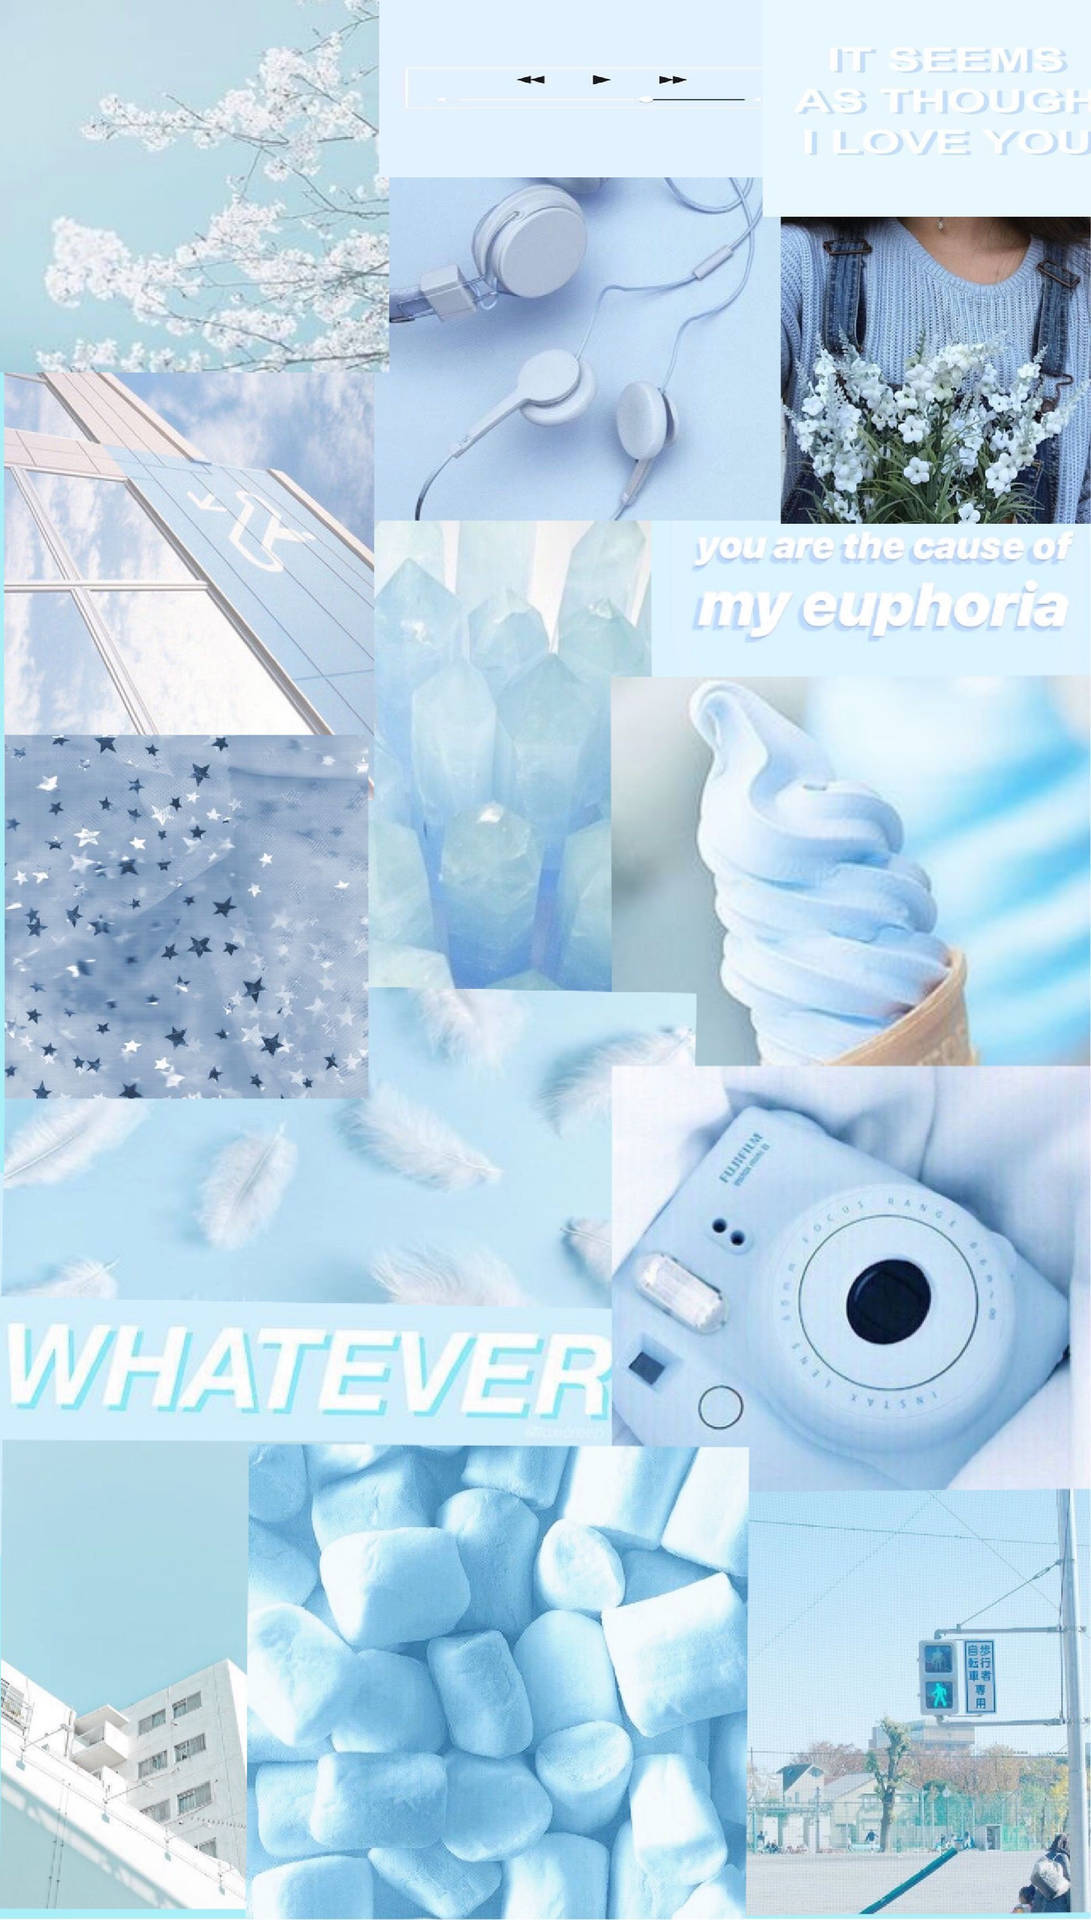 Et collage af billeder med blå og hvide farver. Wallpaper